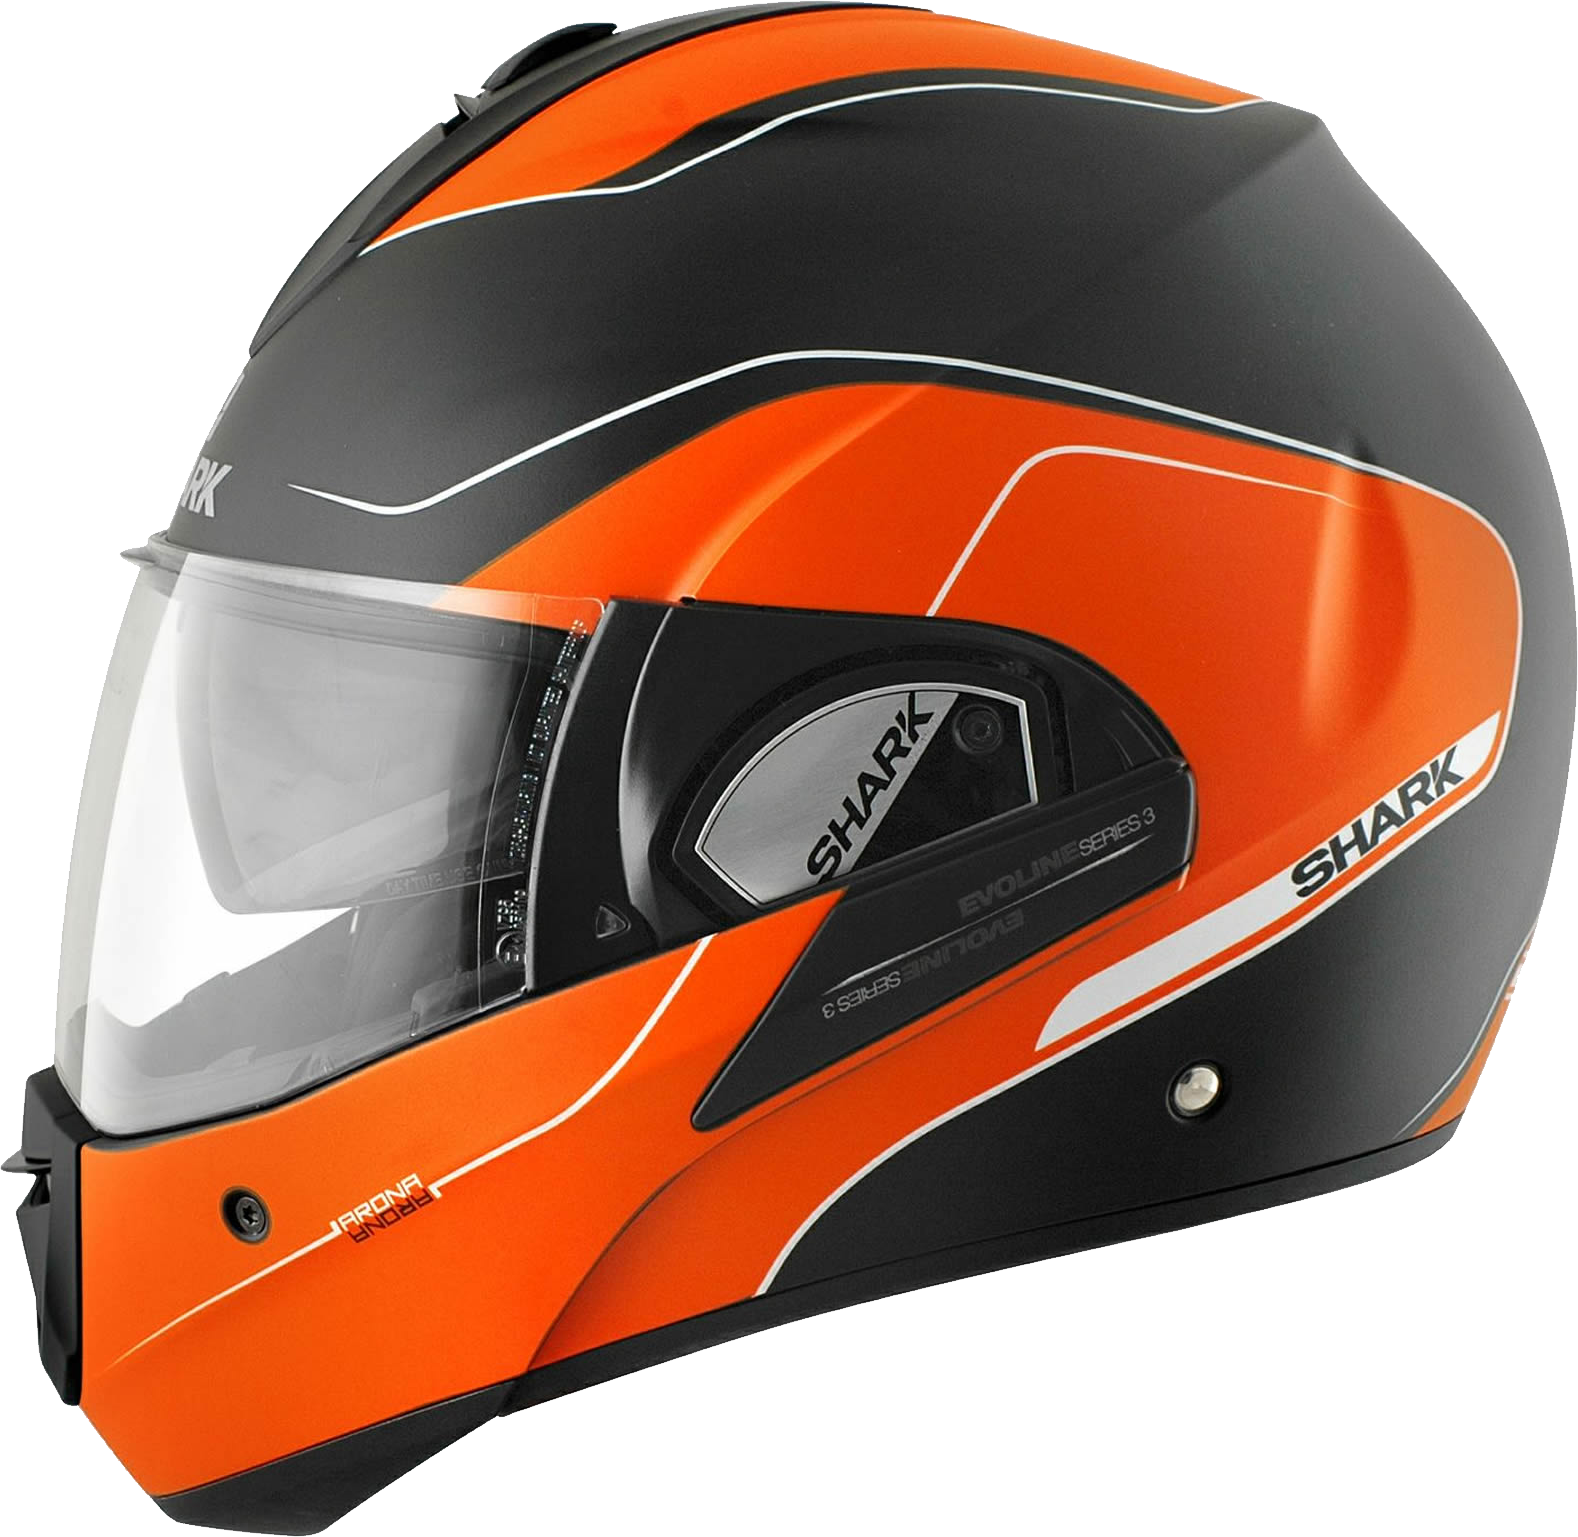 Similar Motorcycle Helmet PNG